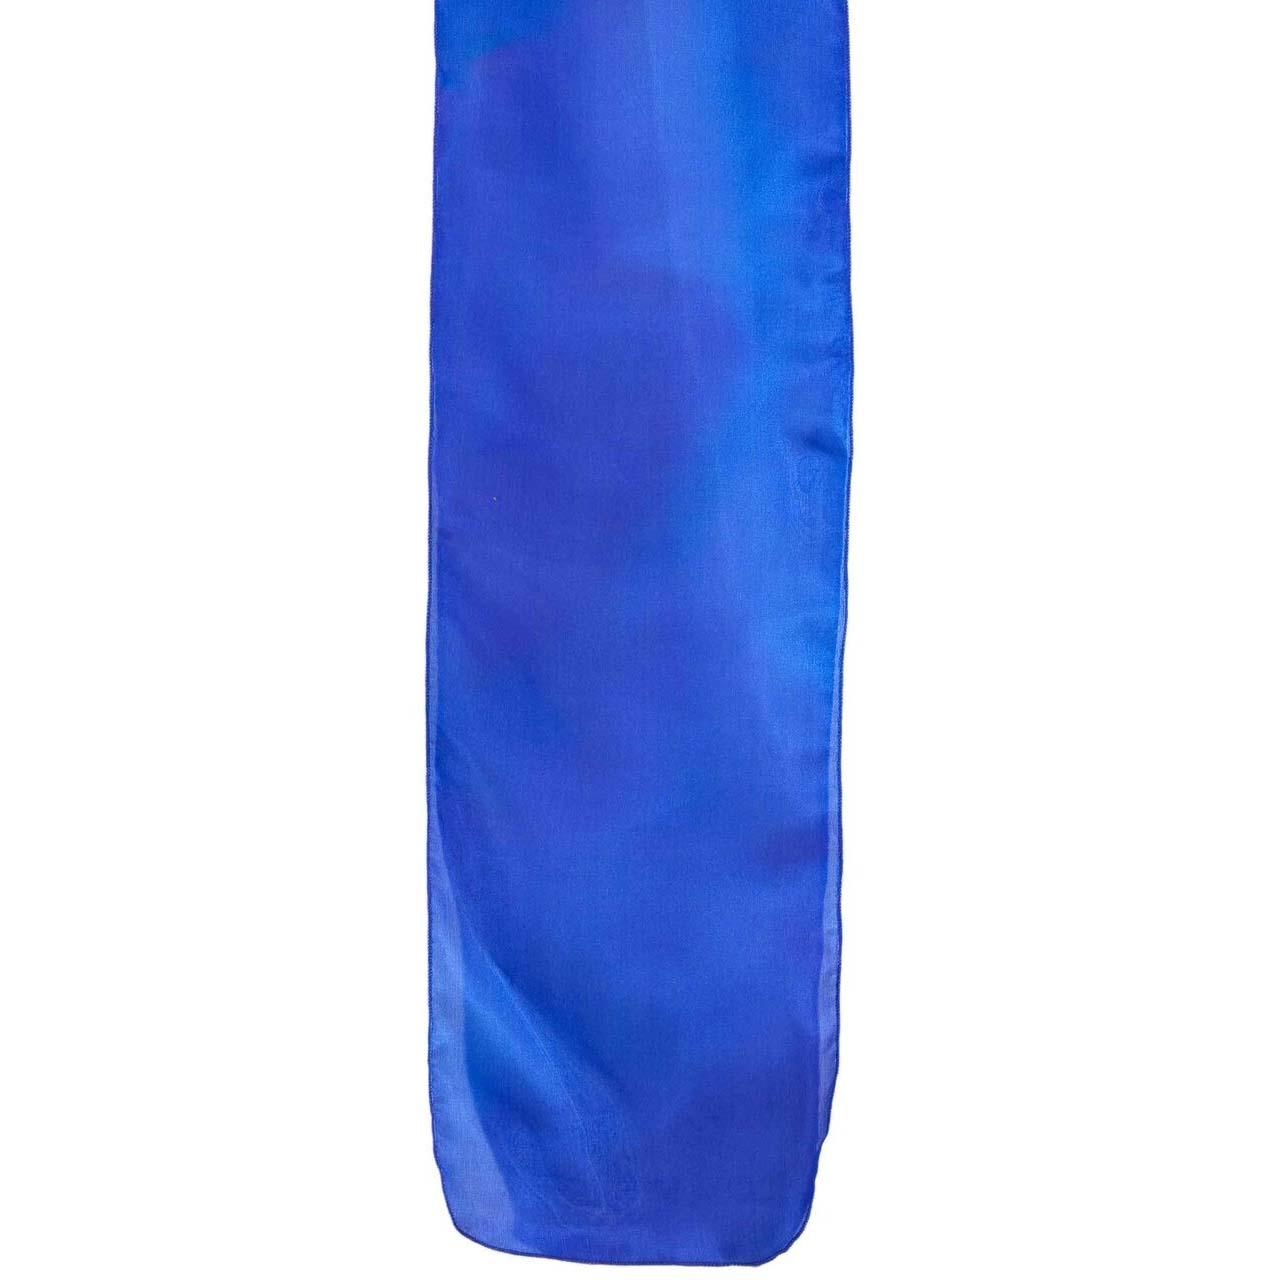 Yair Emanuel Painted Silk Scarf  (Royal Blue) - 1